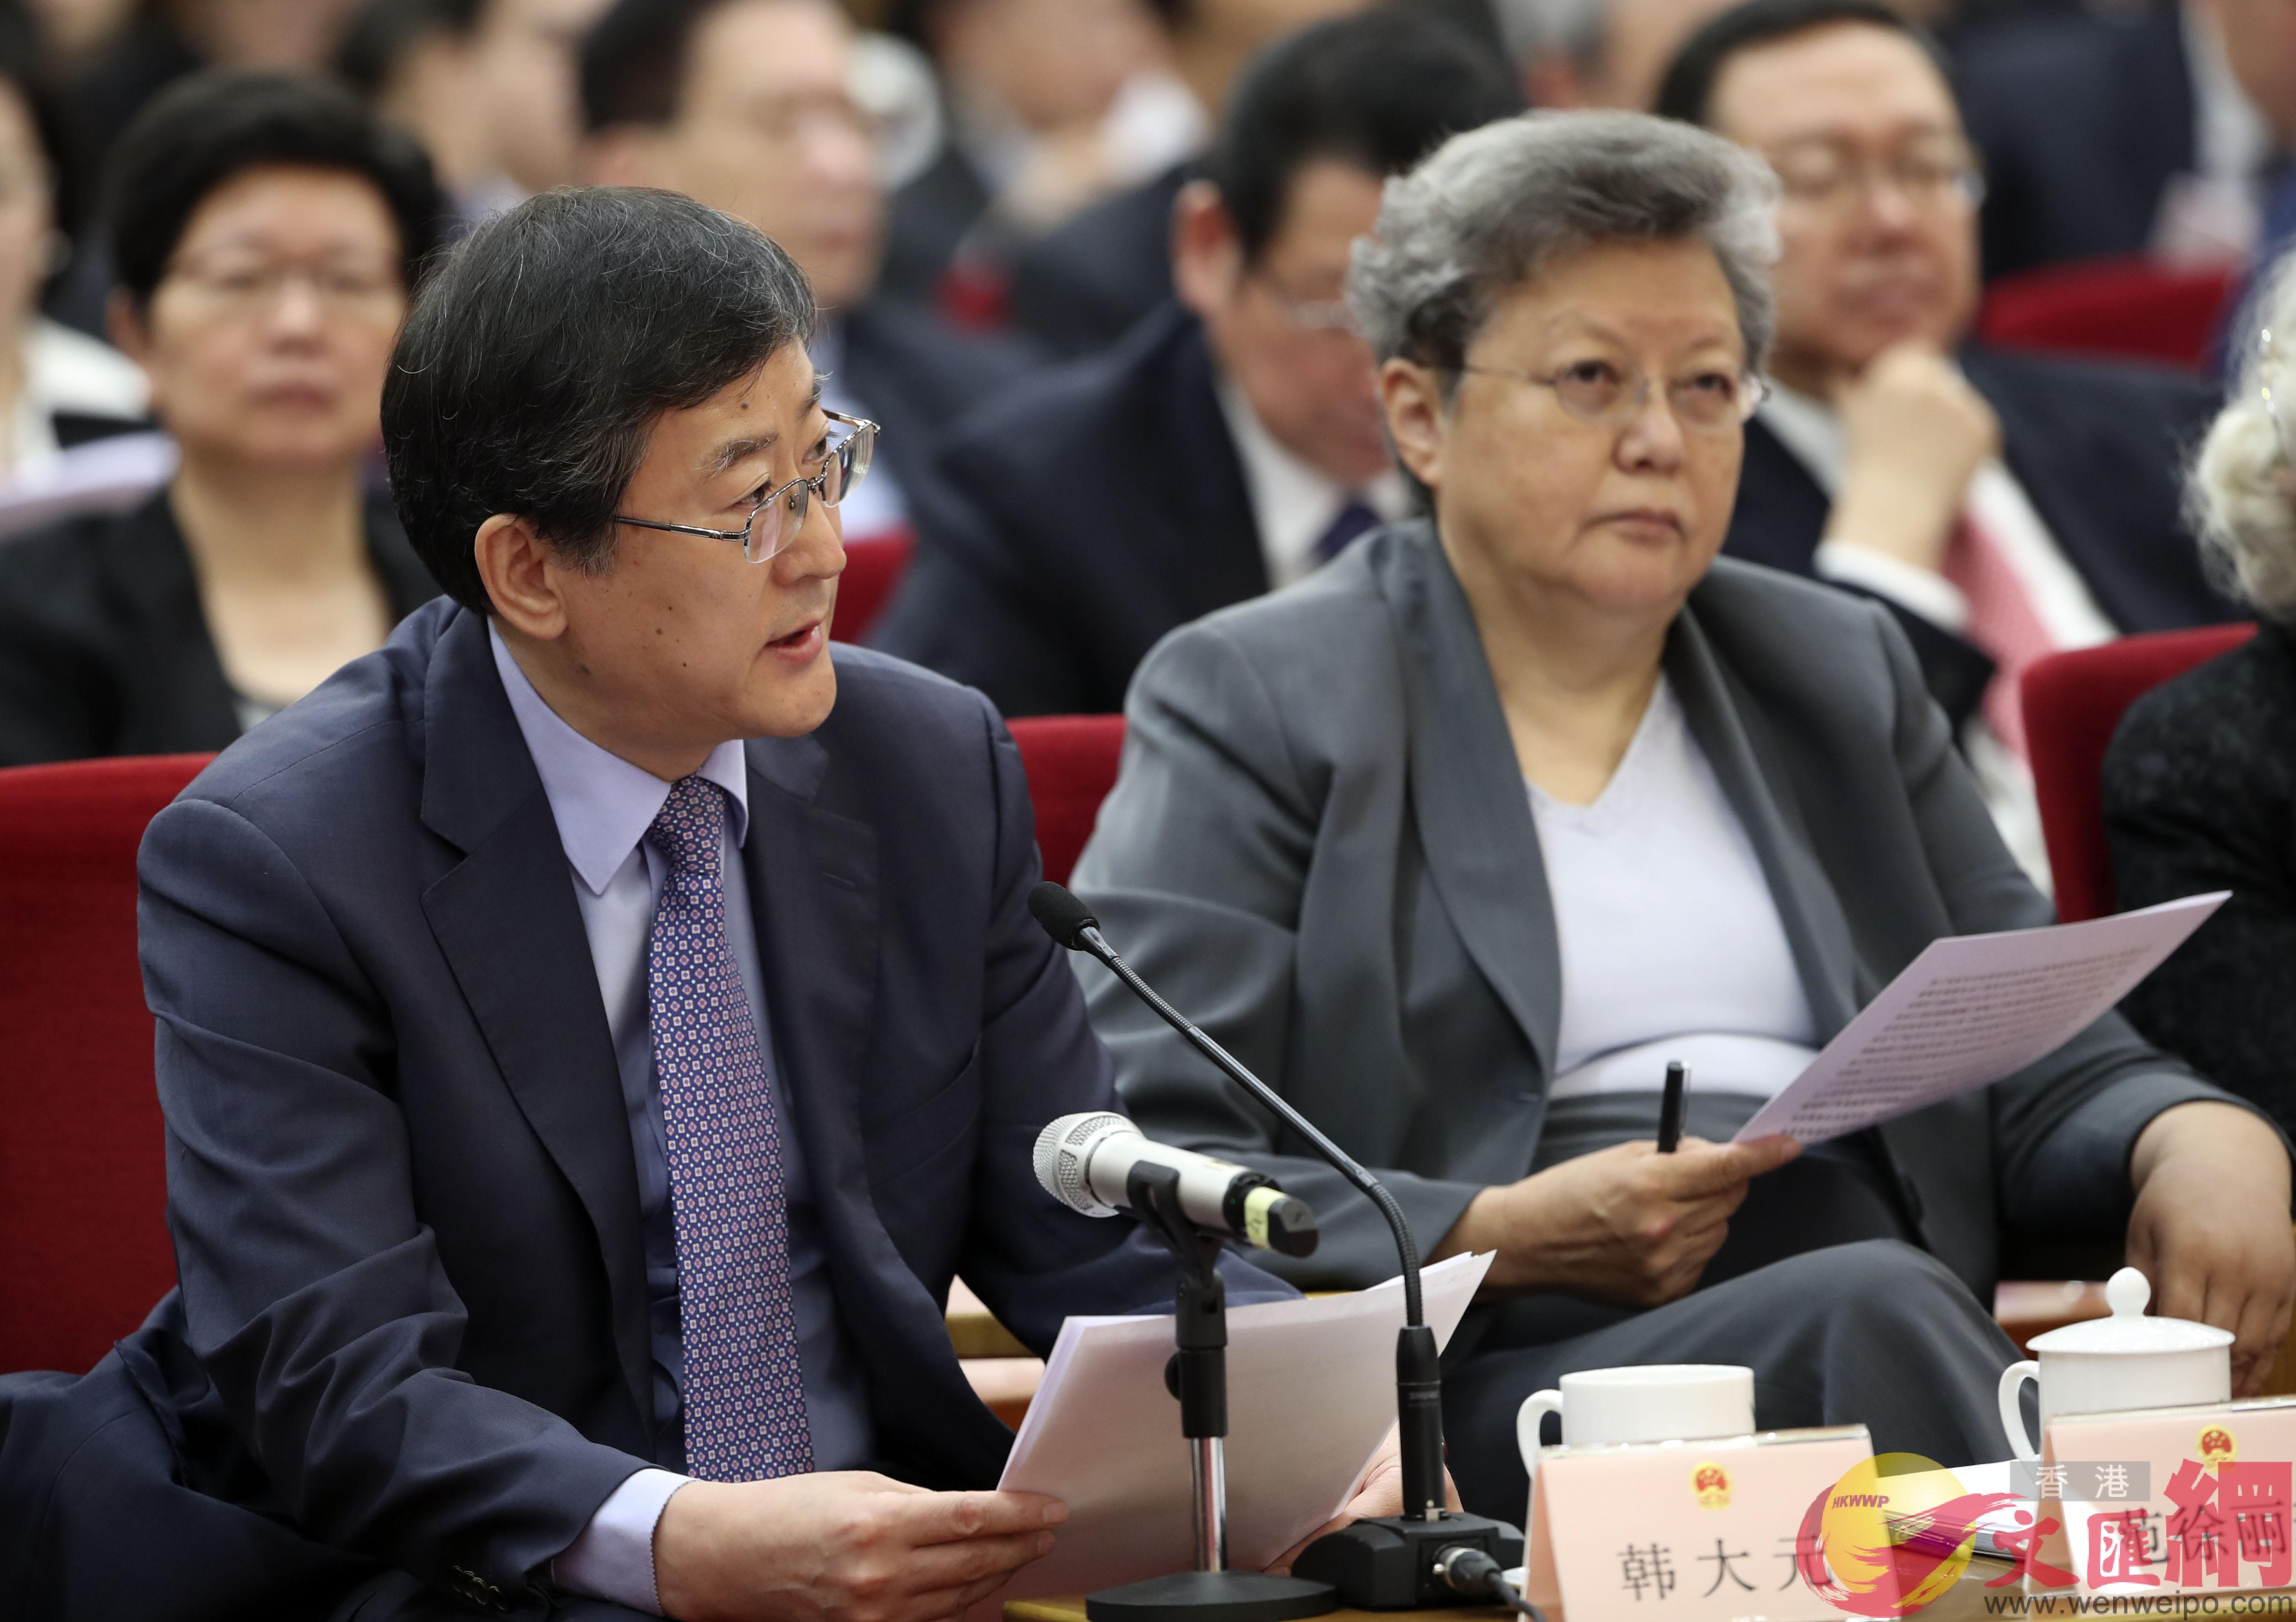 中國人民大學法學院教授韓大元參加座談會並發言。